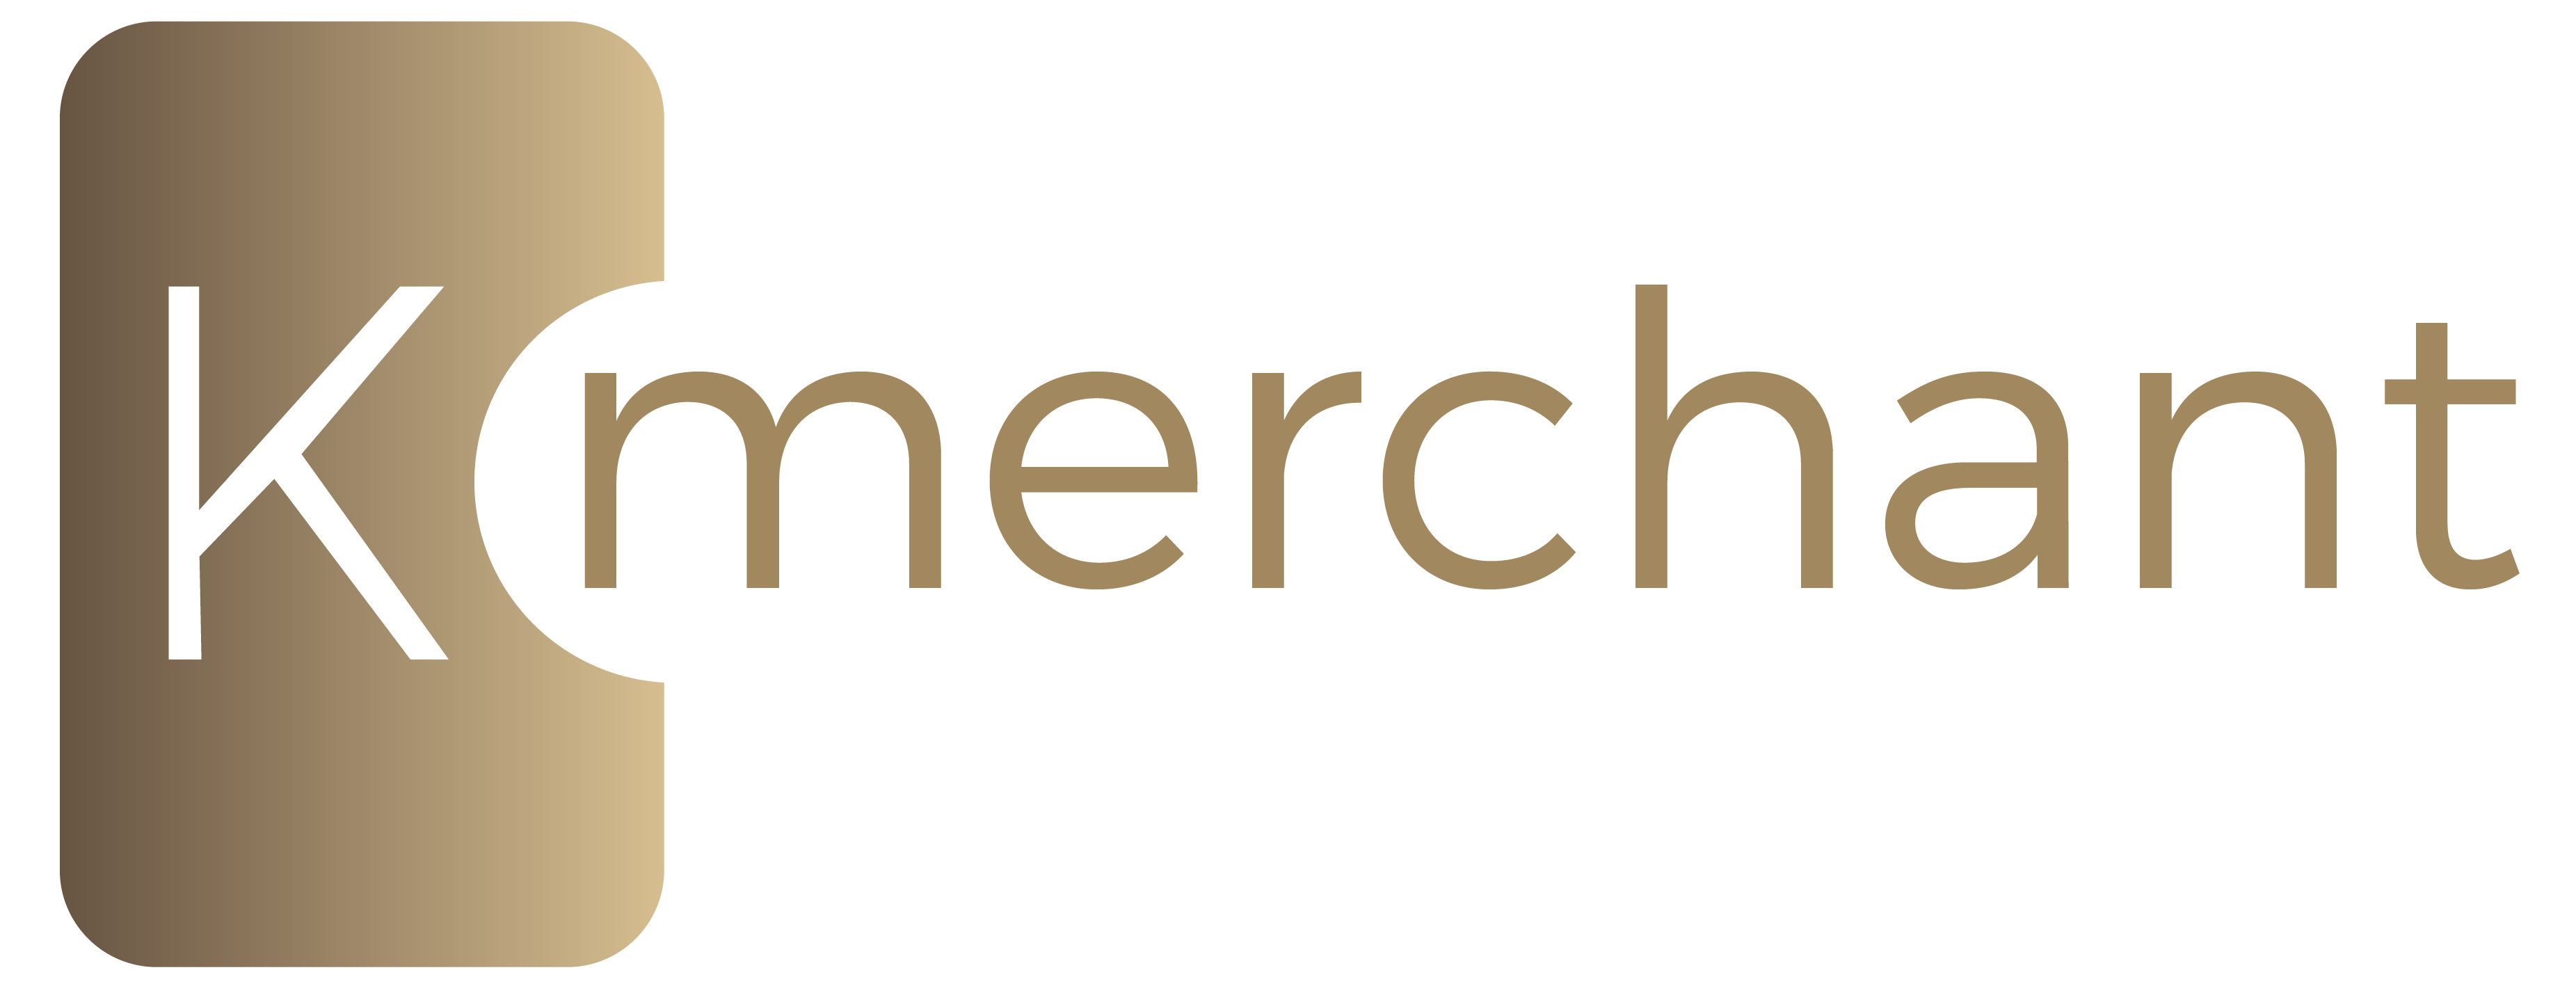 K-merchant-full-logo